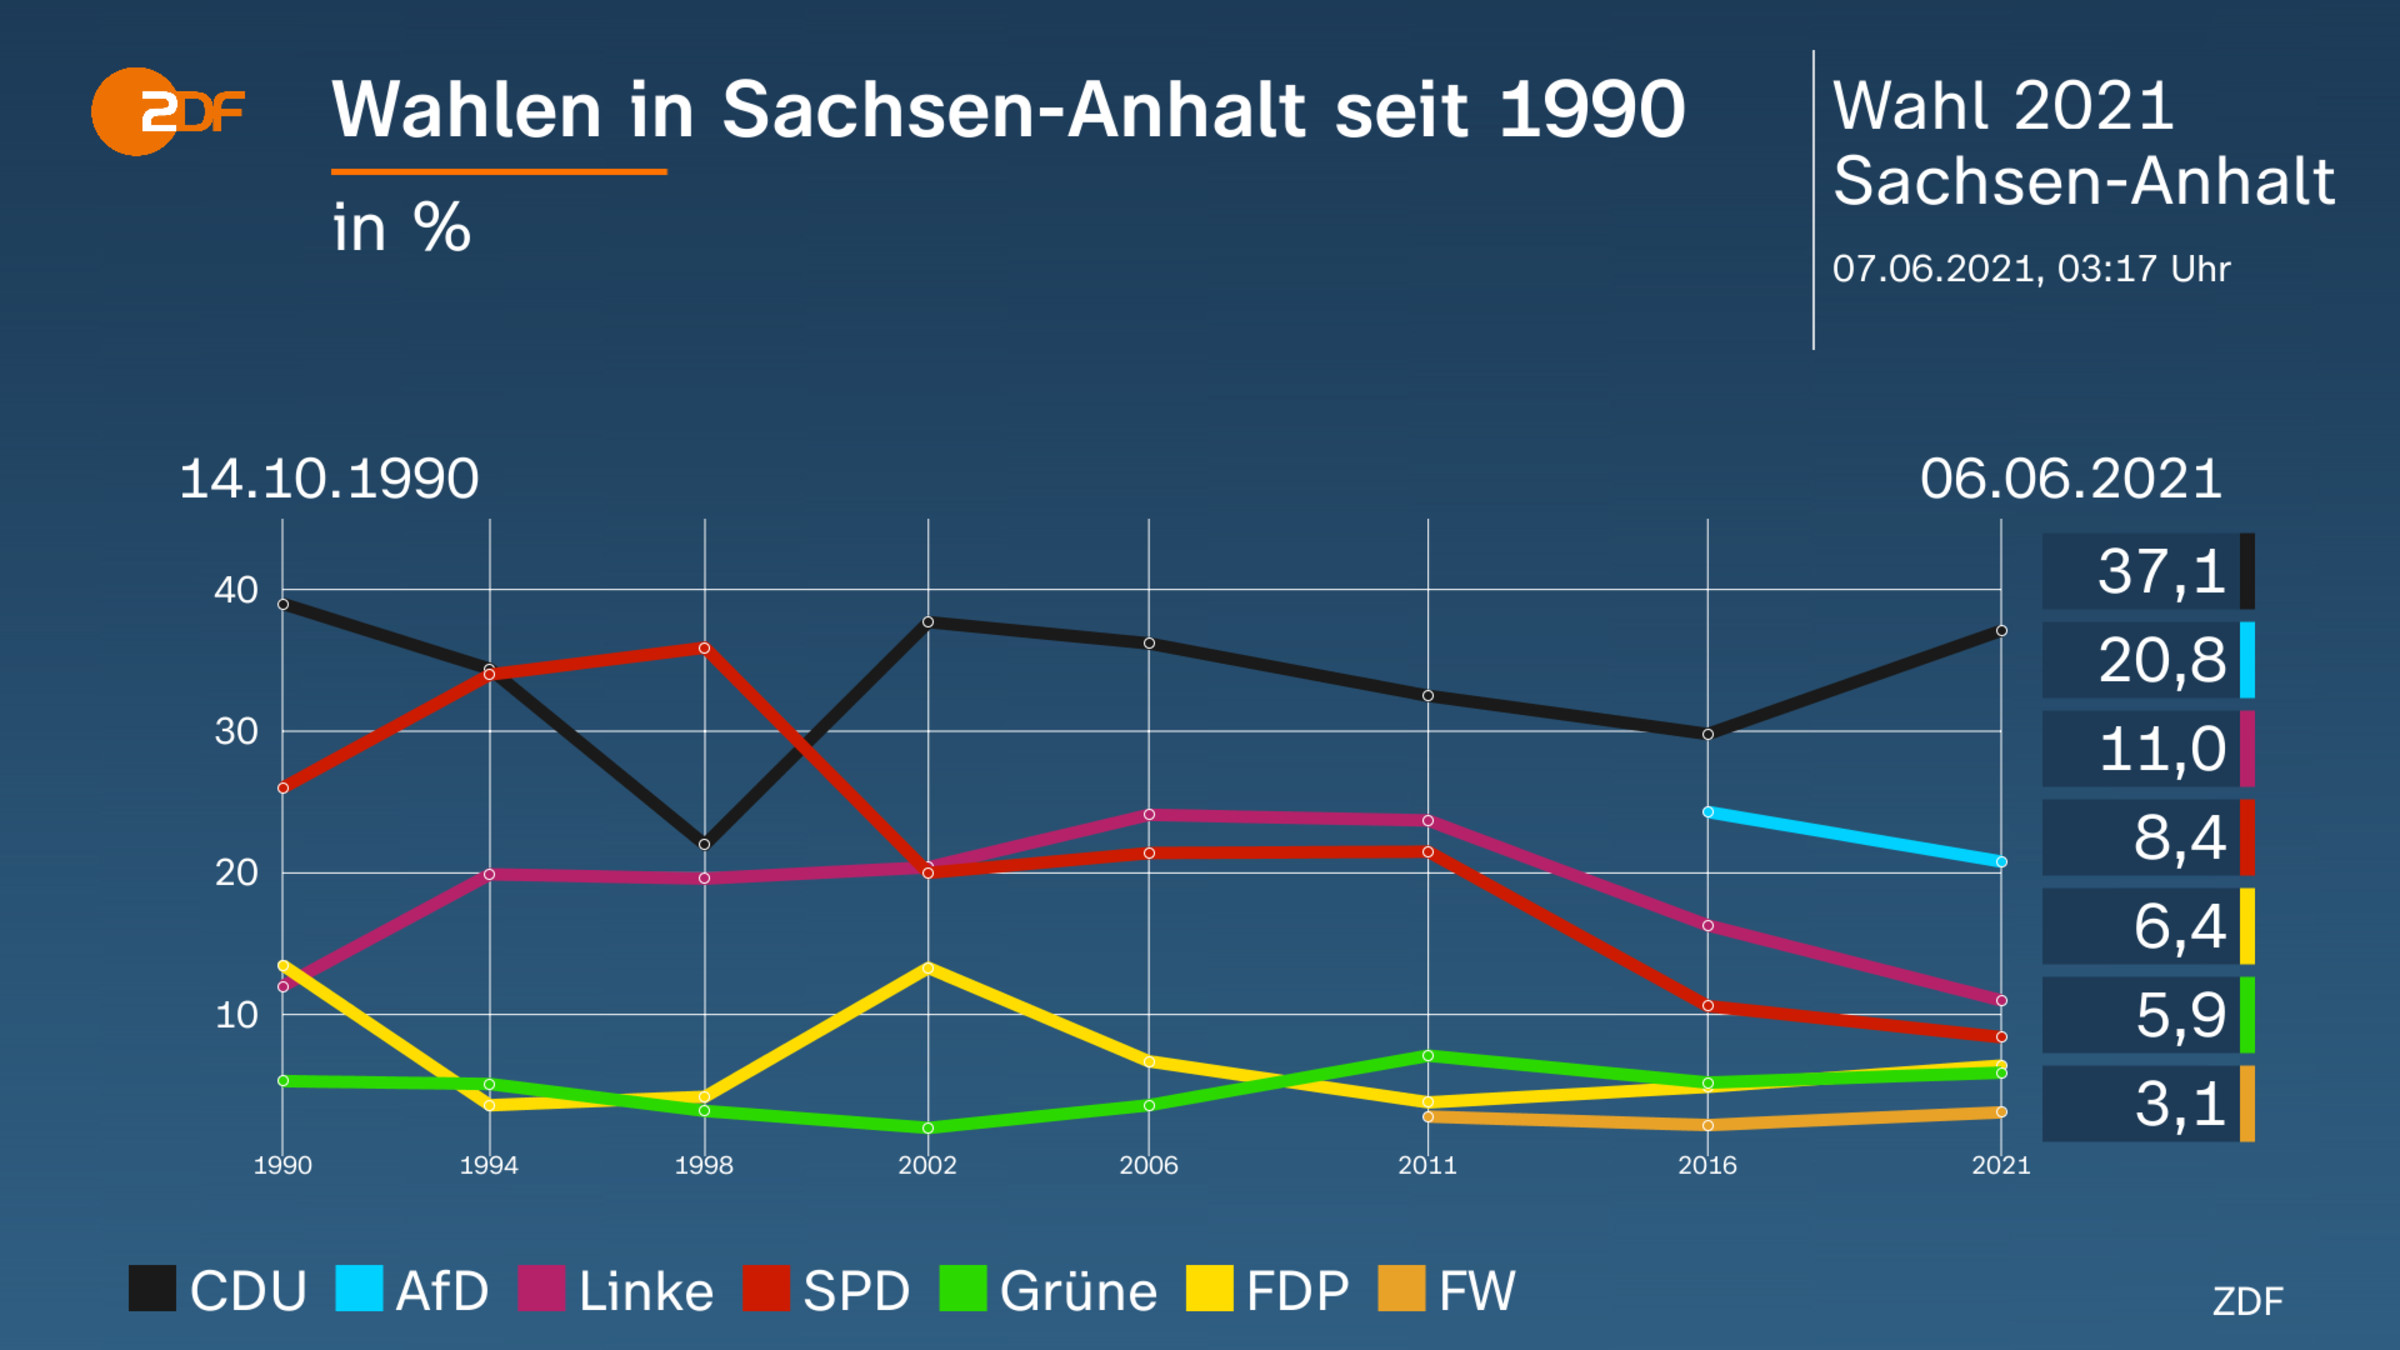 Wahlen in Sachsen-Anhalt seit 1990